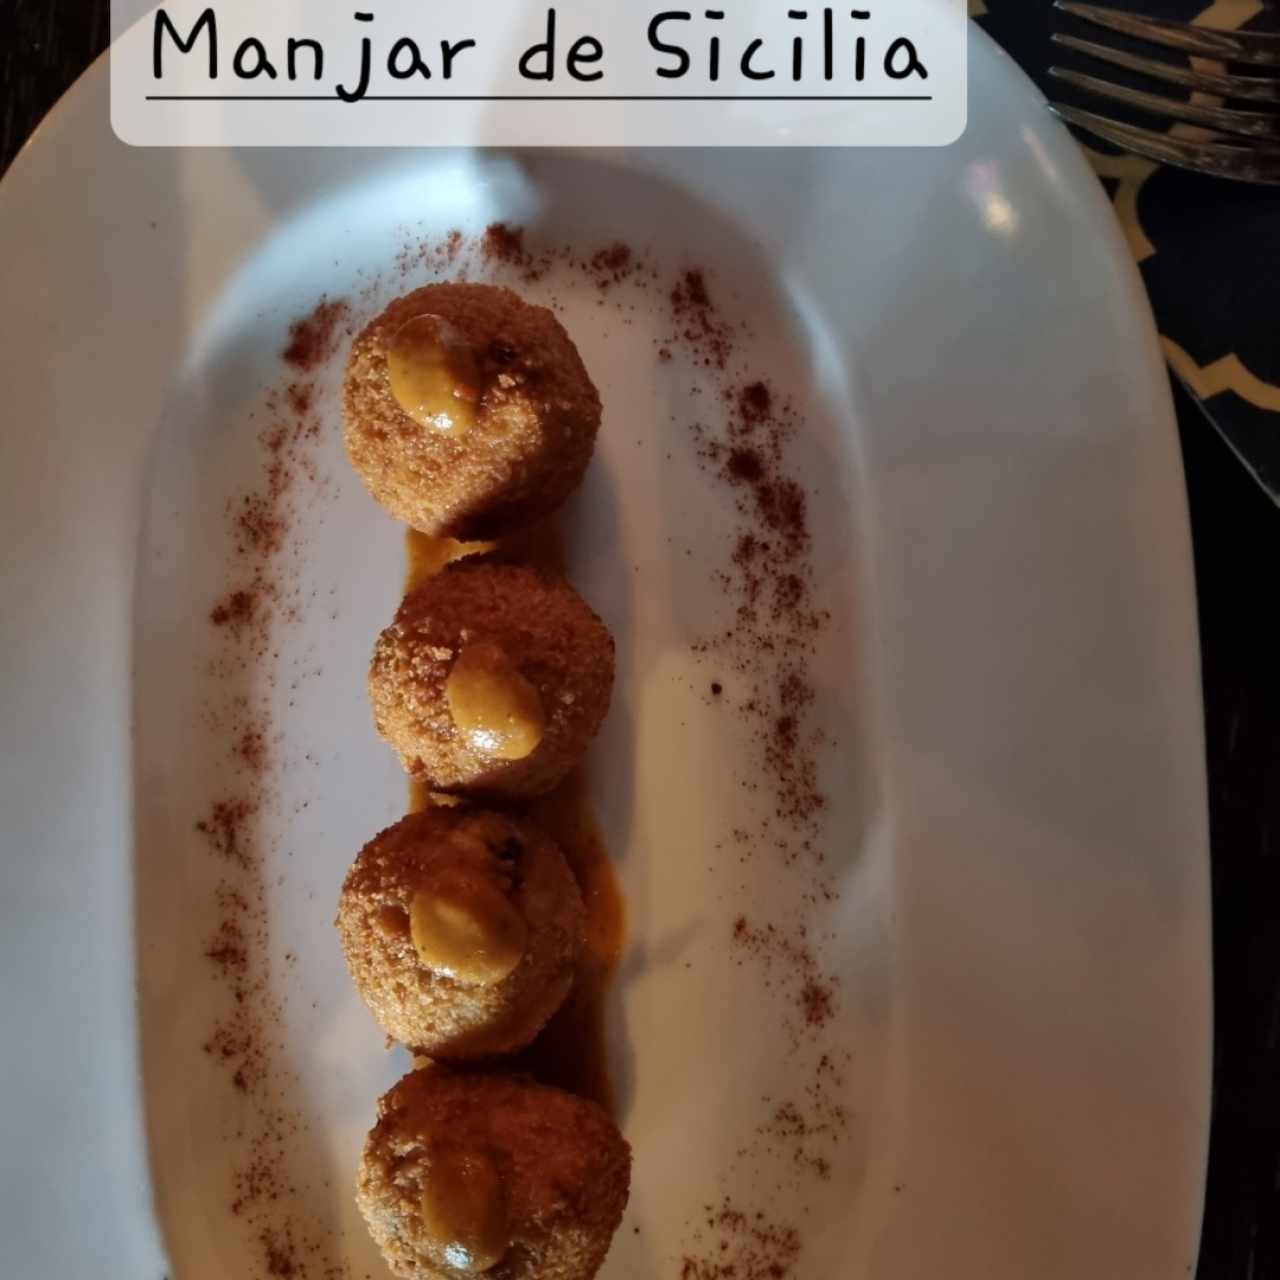 Manjar de Sicilia